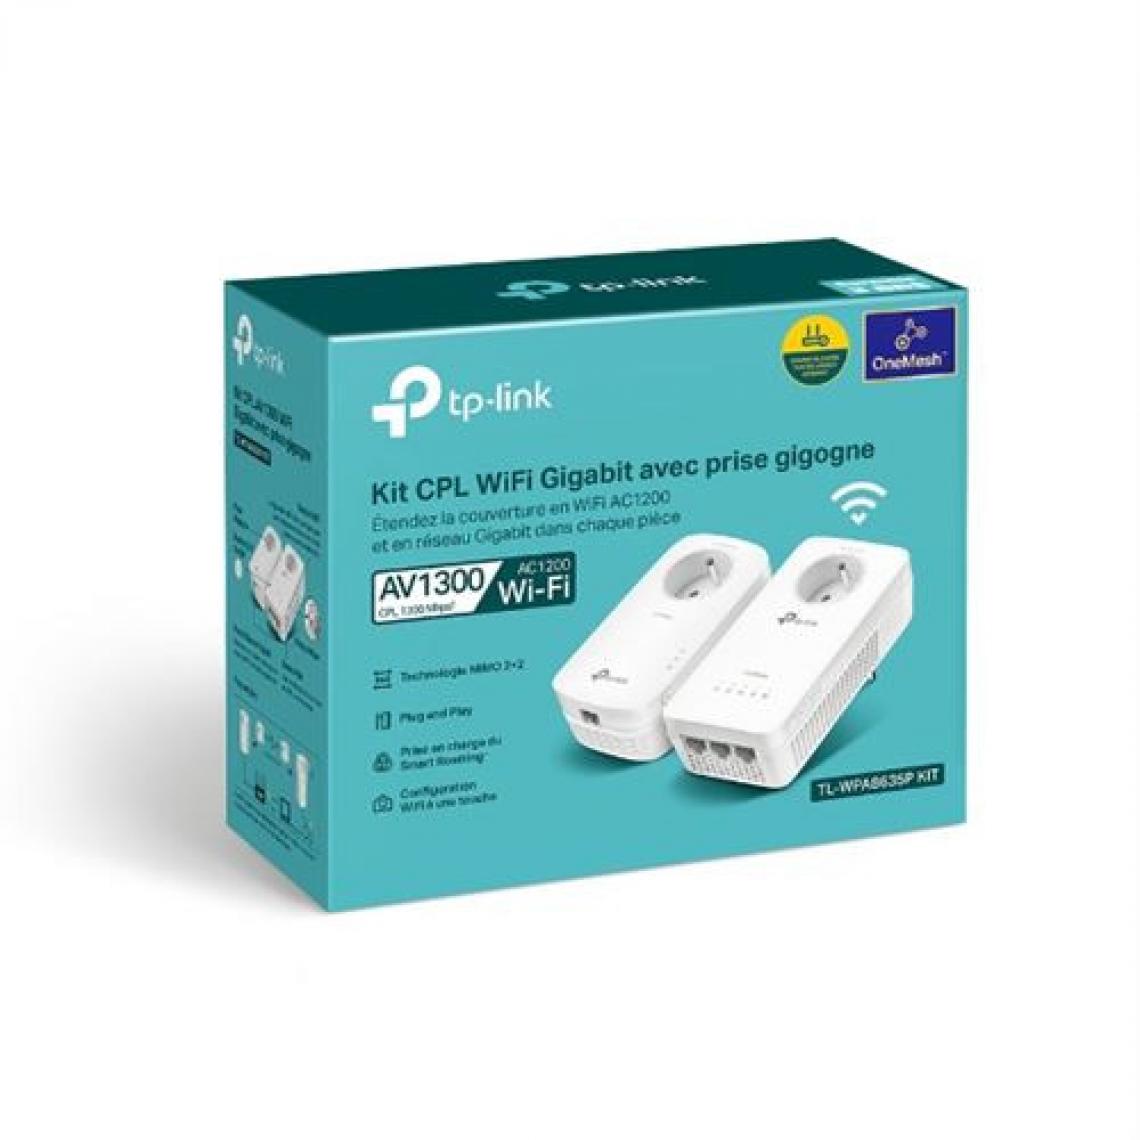 TP-LINK - Kit CPL AV1300 Gigabit WiFi AC avec prise gigogne TP LINK Blanc - Switch